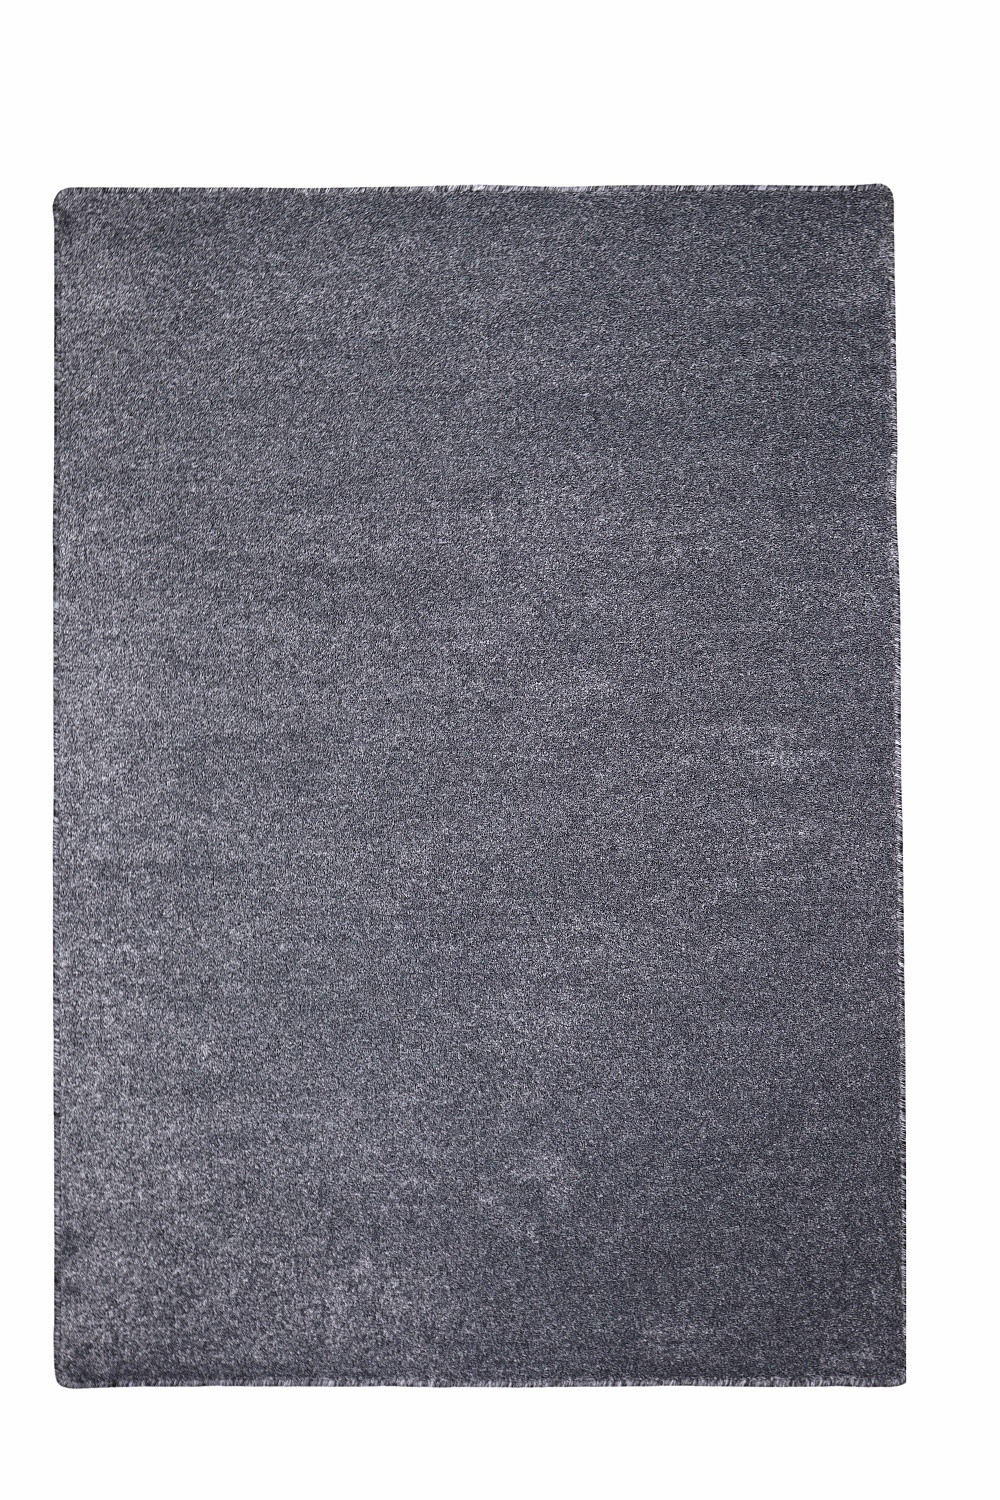 Levně Vopi koberce Kusový koberec Apollo Soft antra - 100x150 cm